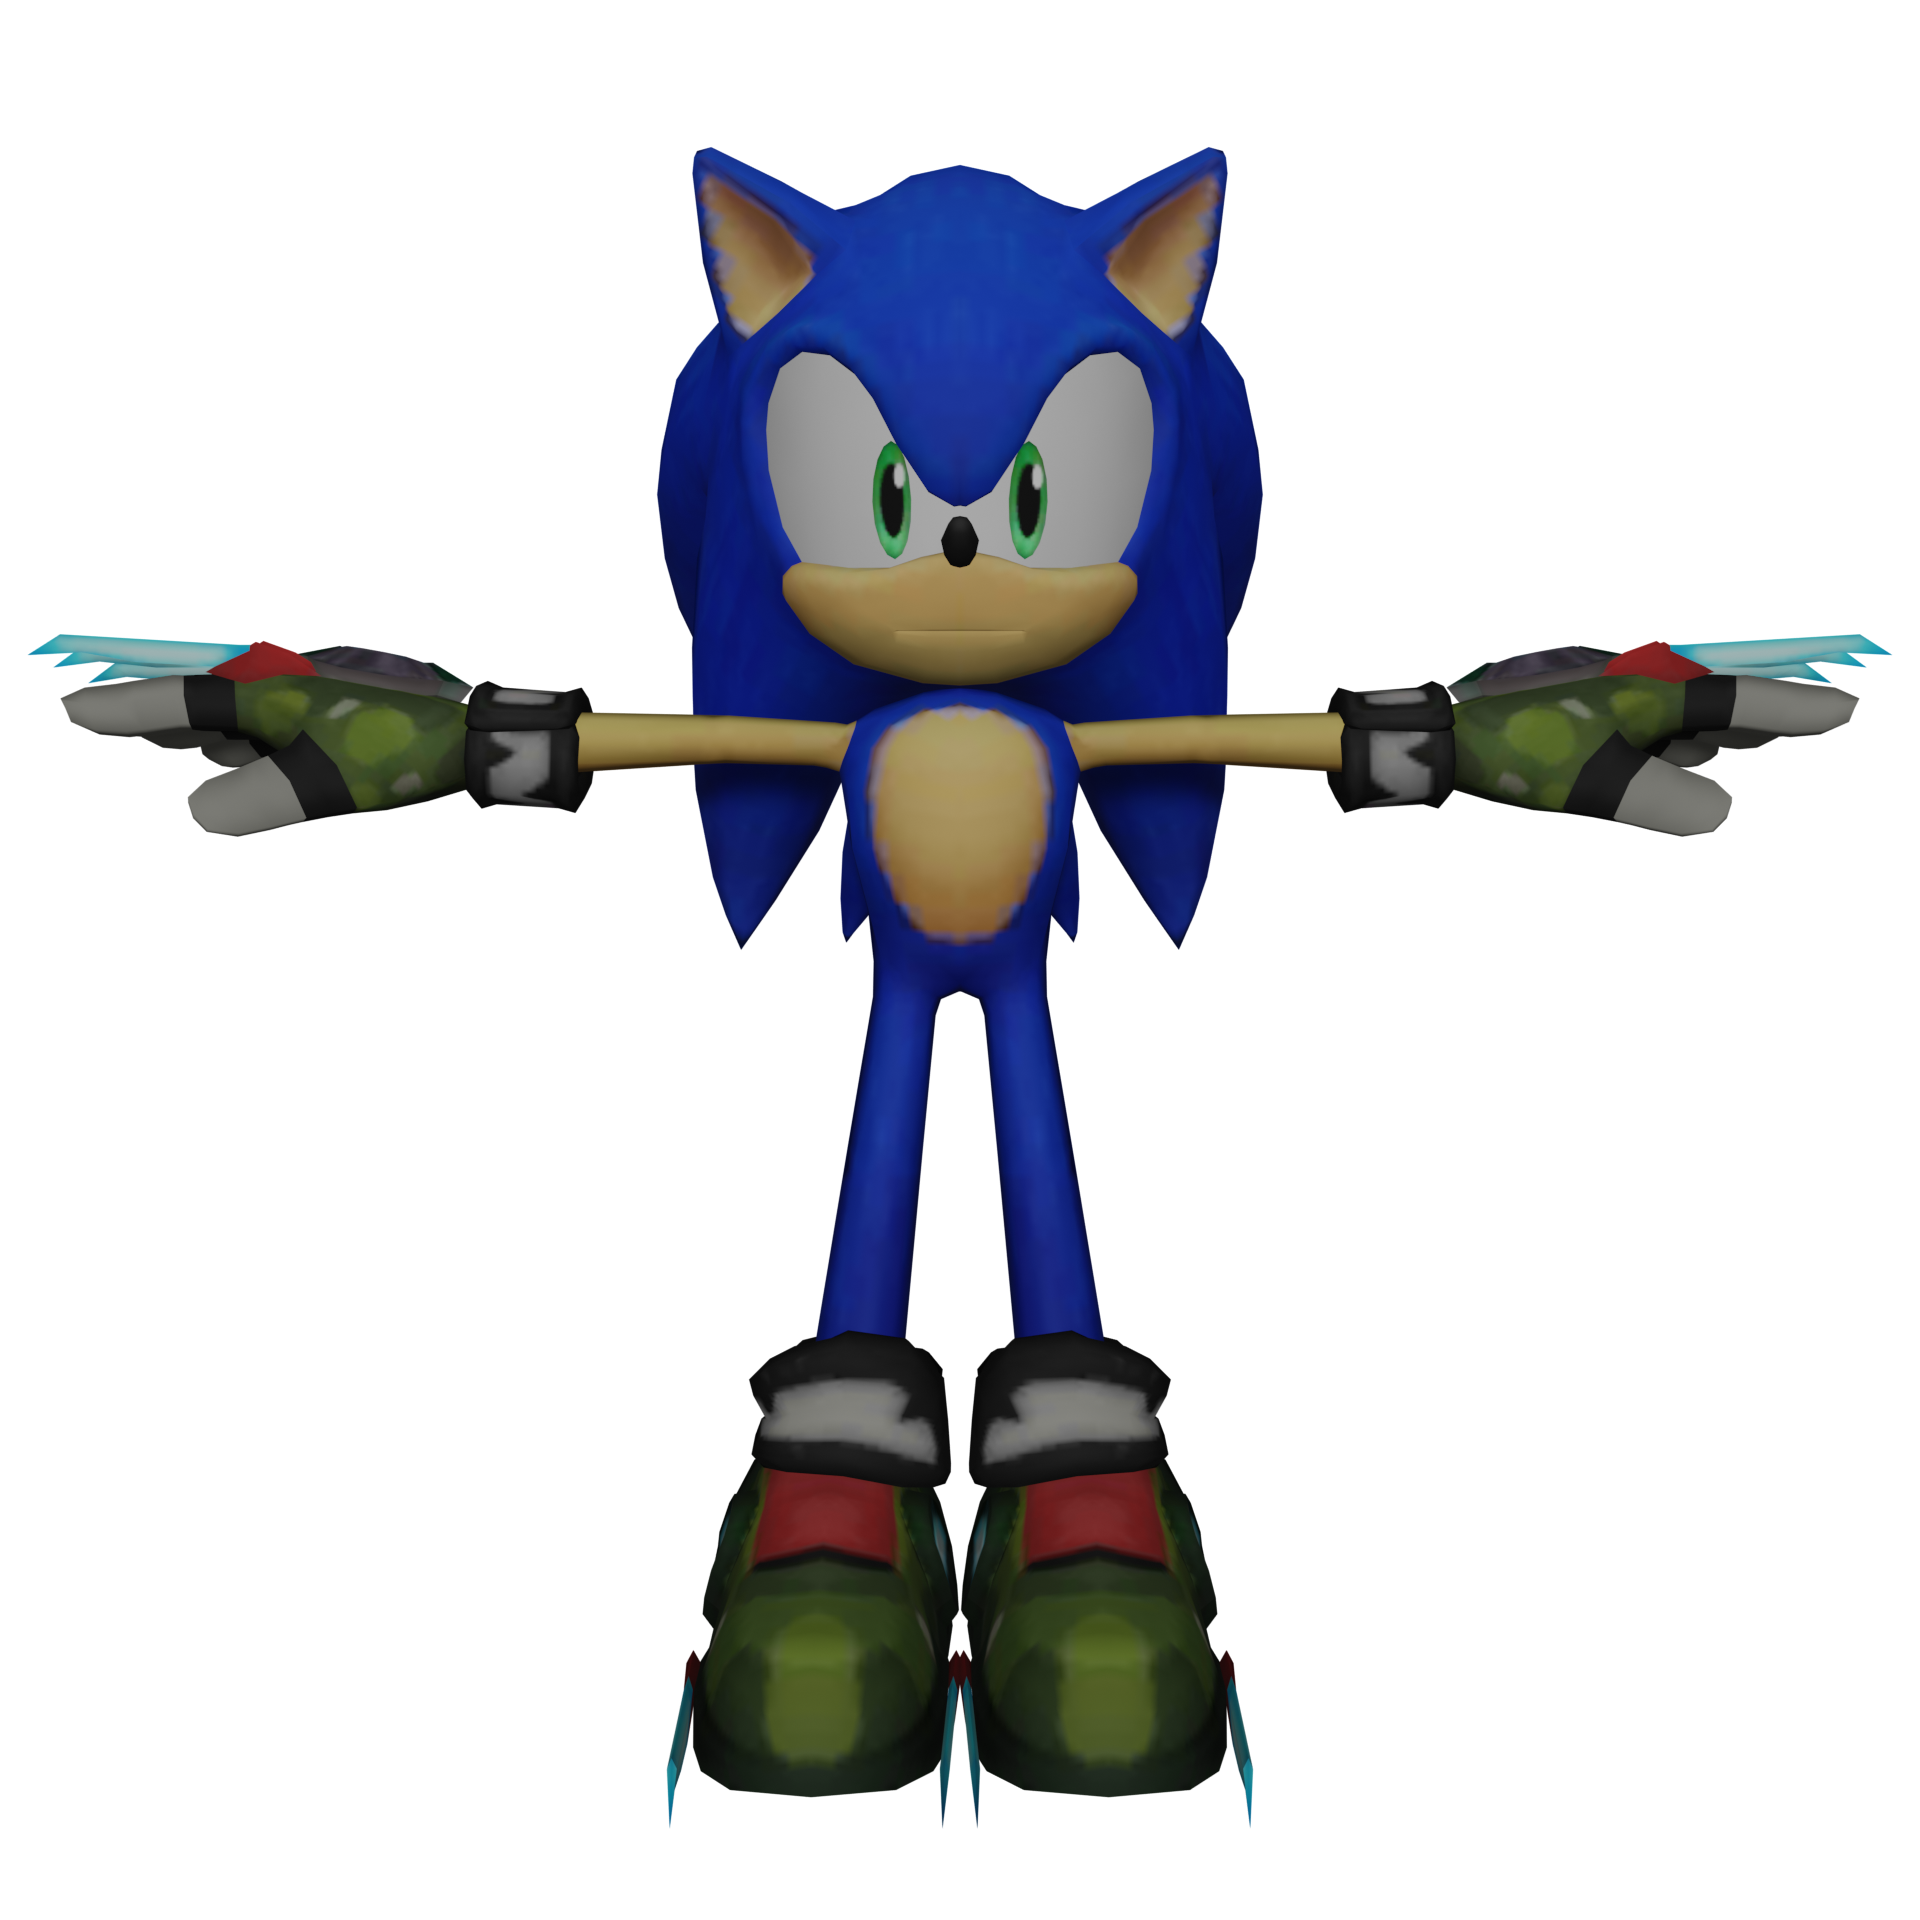 Sonic Prime, Sonic Wiki Zone